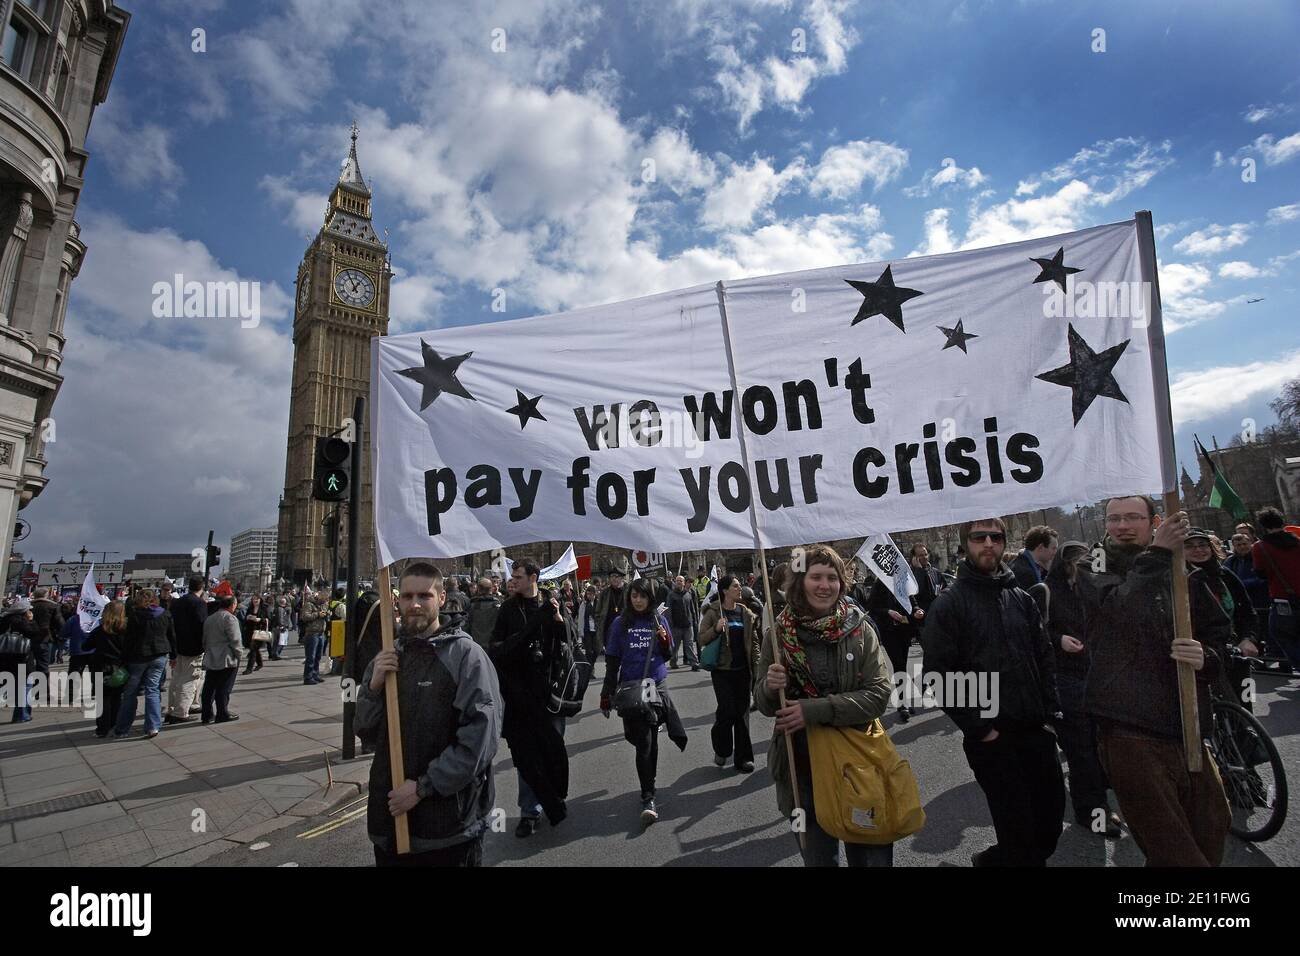 GROSSBRITANNIEN / England / London /Demonstranten, die am 28. März 2009 in London, England, ein Banner mit der Aufschrift halten, dass wir für Ihre Krise nicht bezahlen werden. Stockfoto